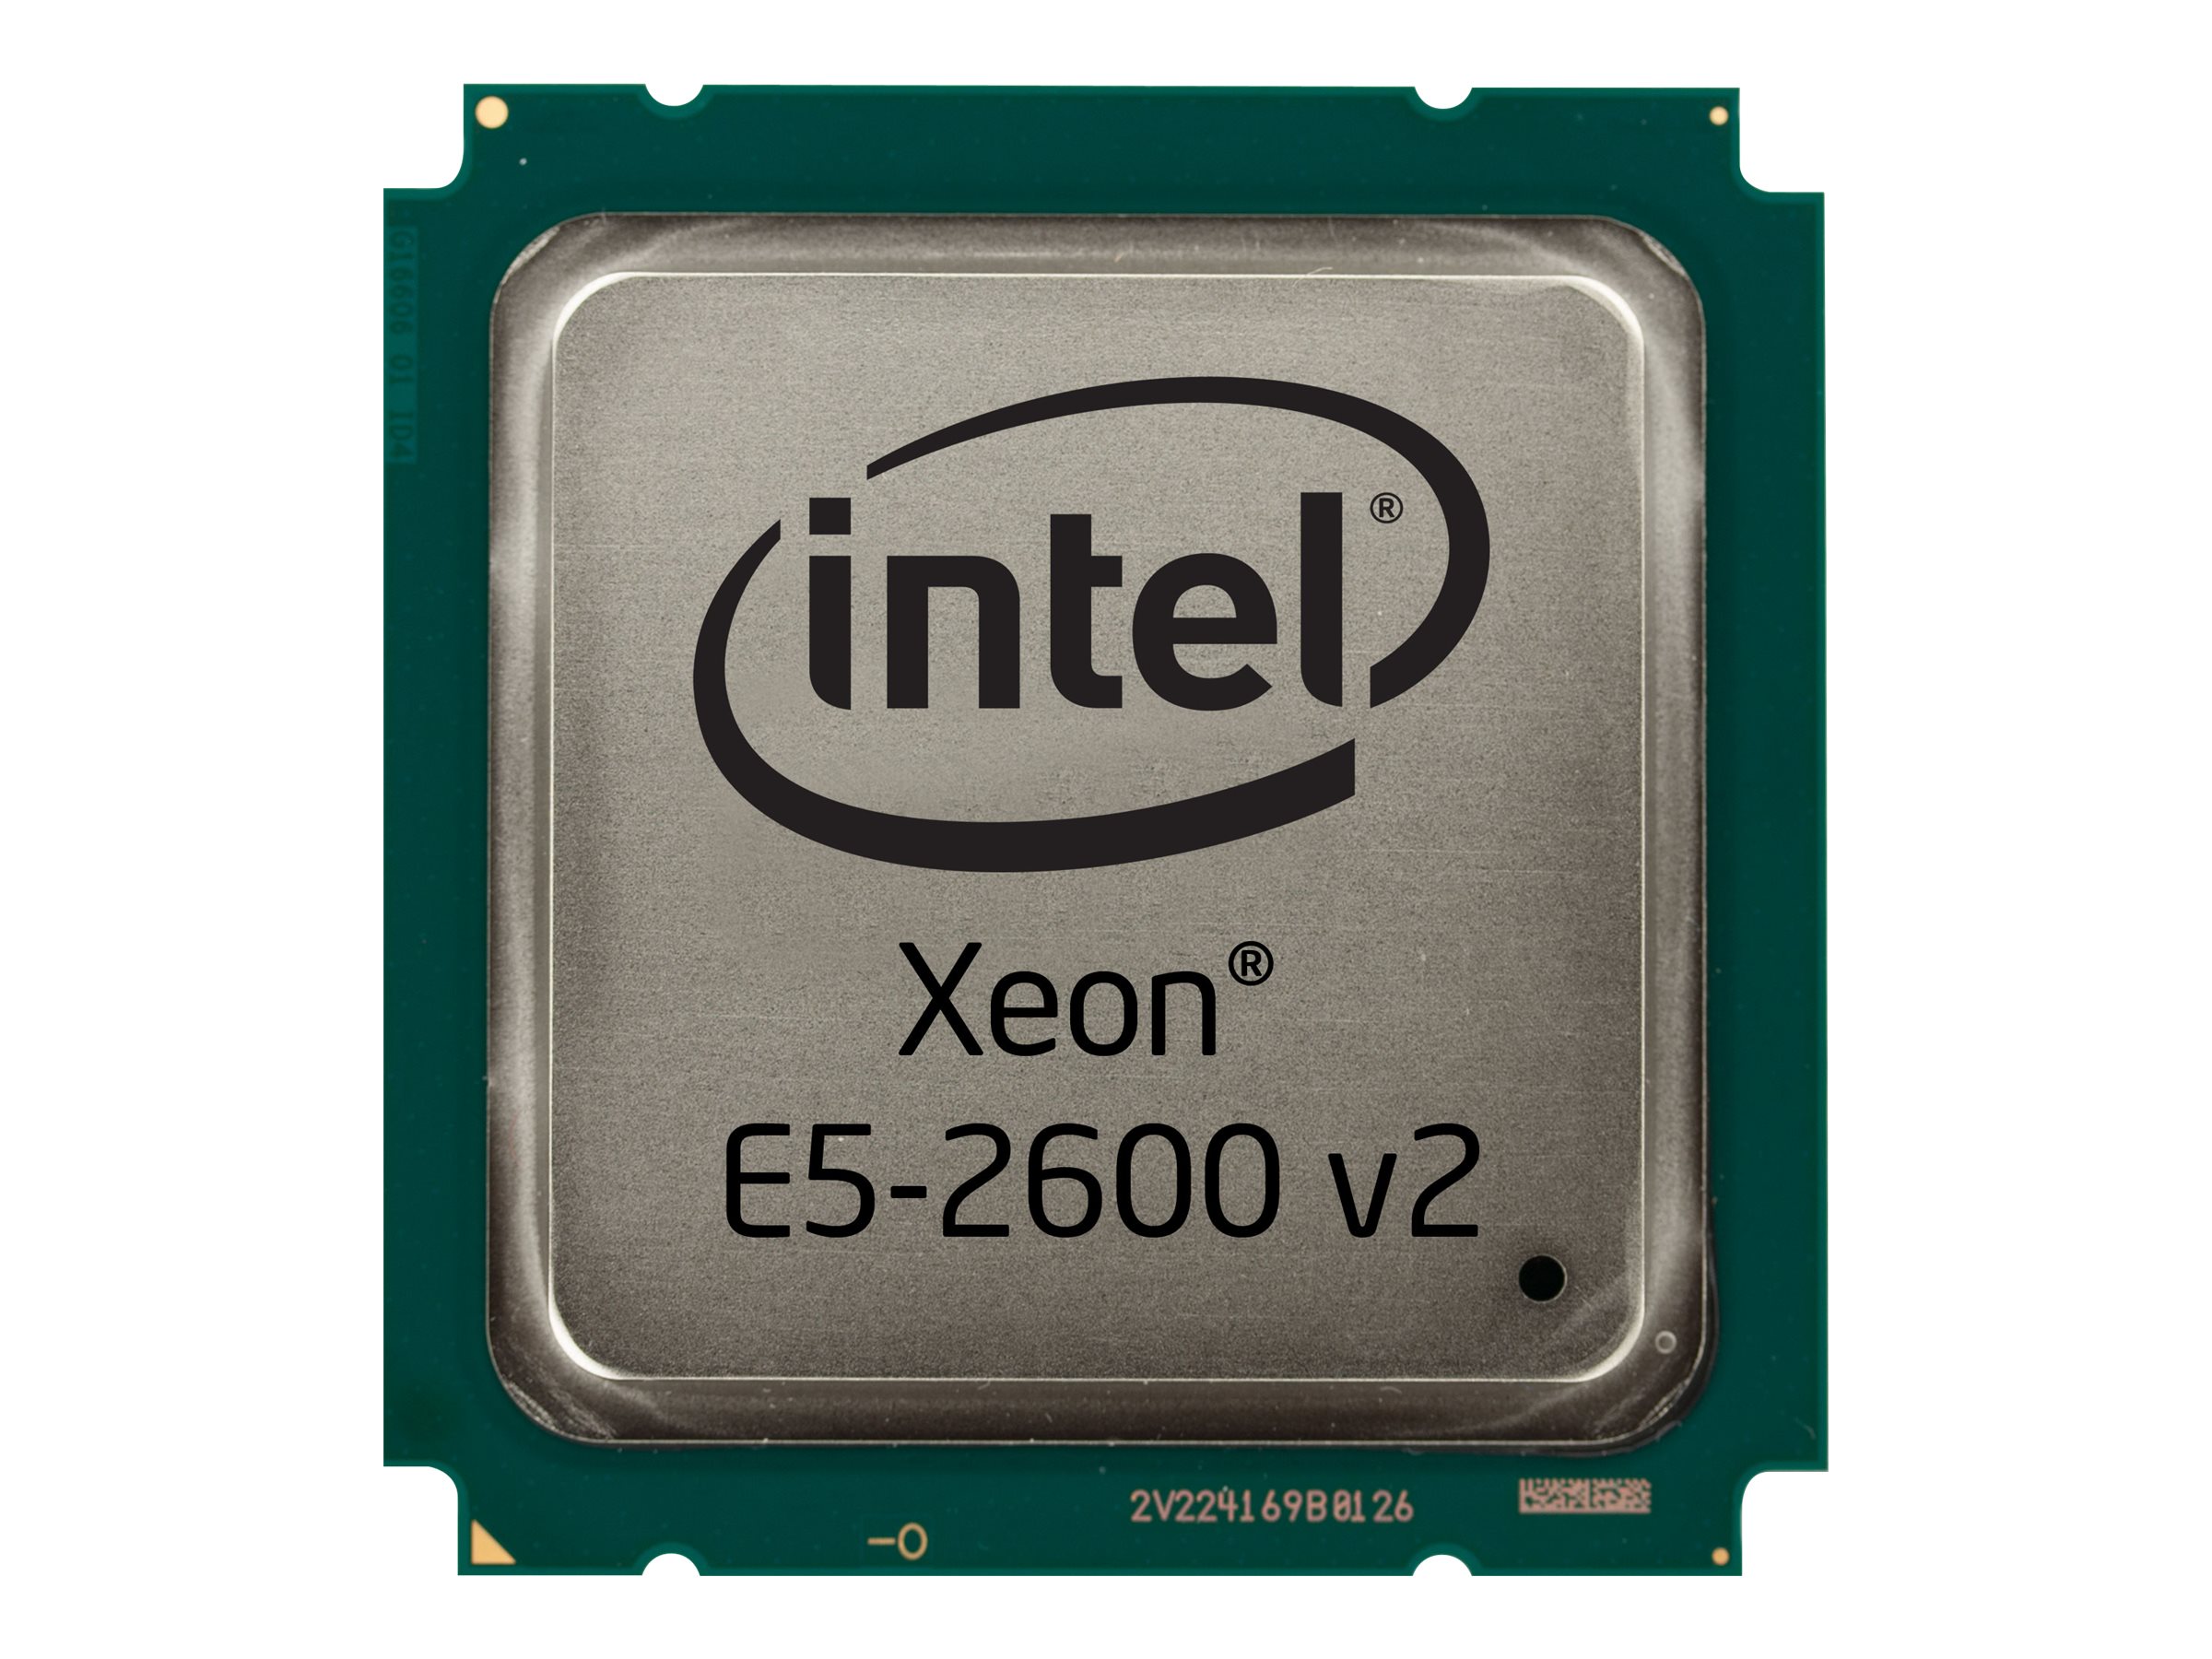 Подобрать процессор intel. Процессоры Intel Xeon e5. Процессор Intel Xeon e5-2650v2. Xeon e5 2620 v2. Intel Xeon e5-2603 процессор.